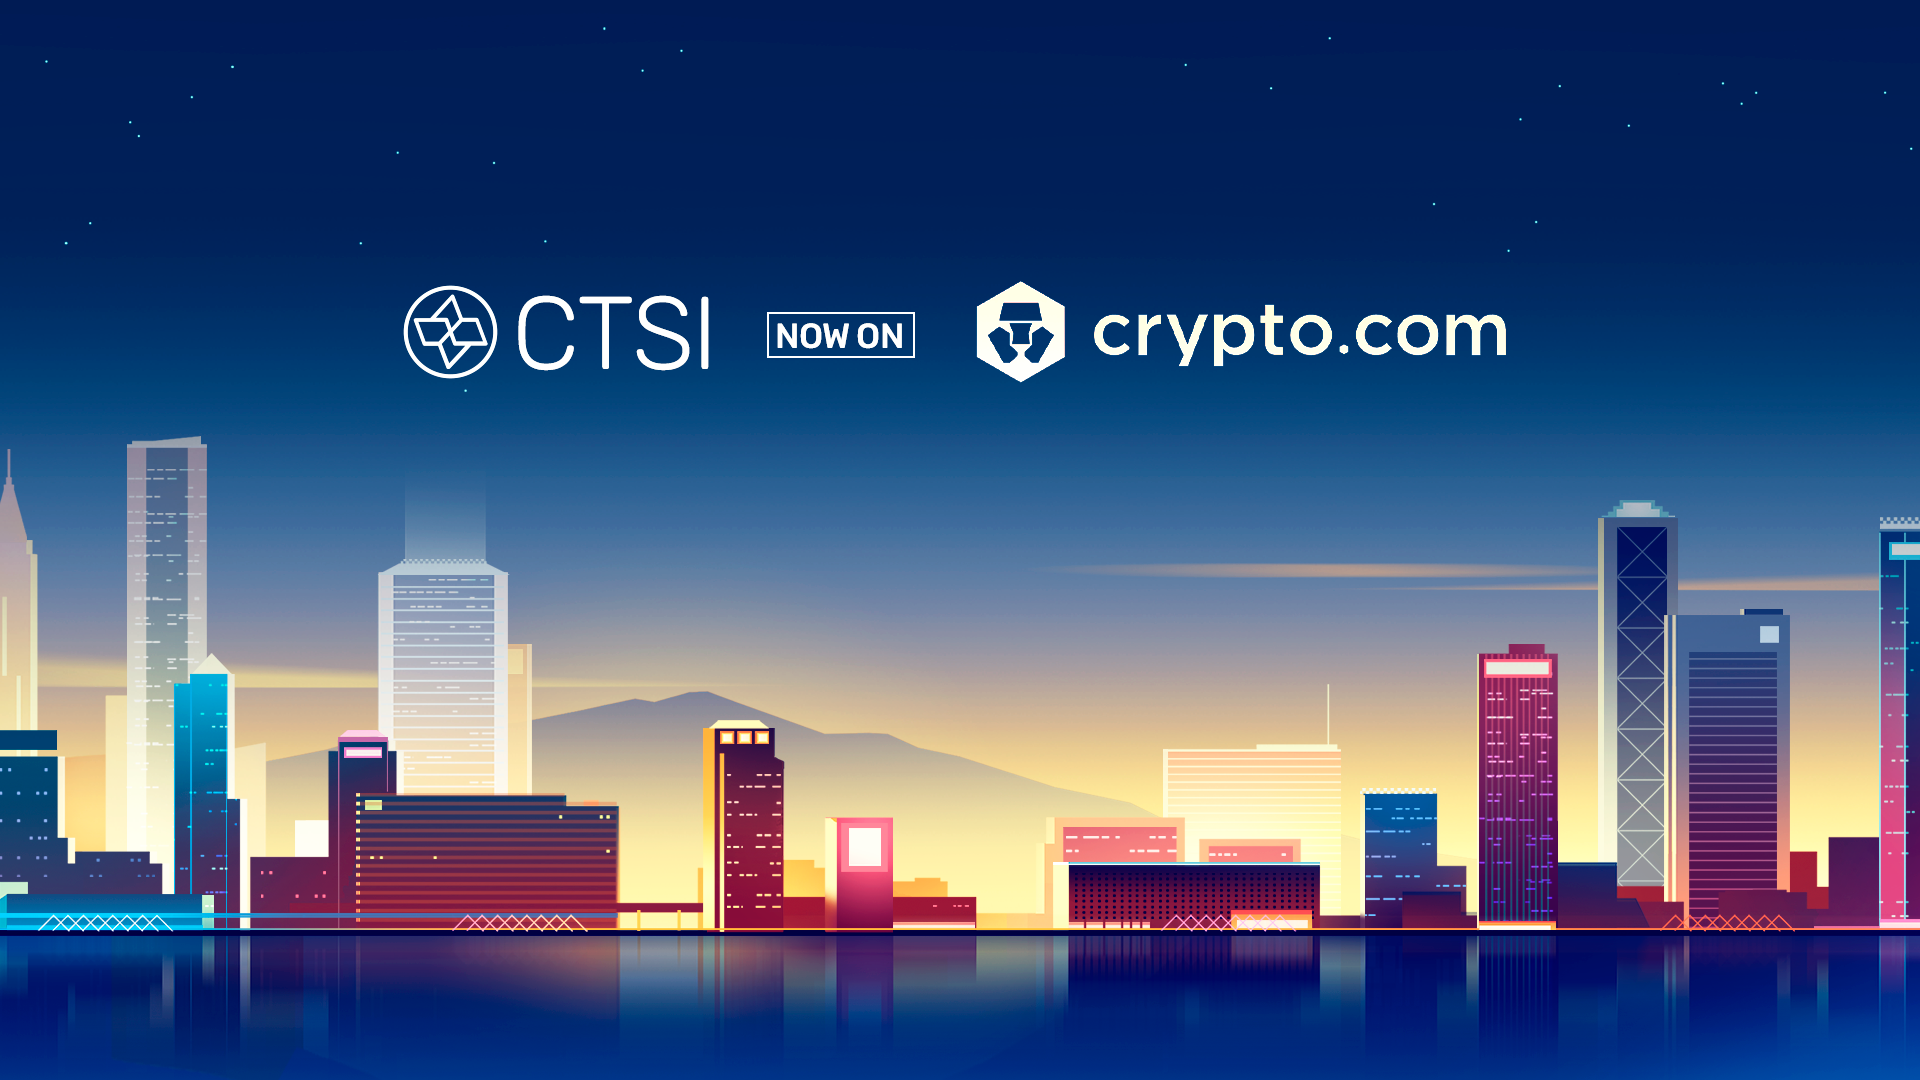 CTSI Crypto.com